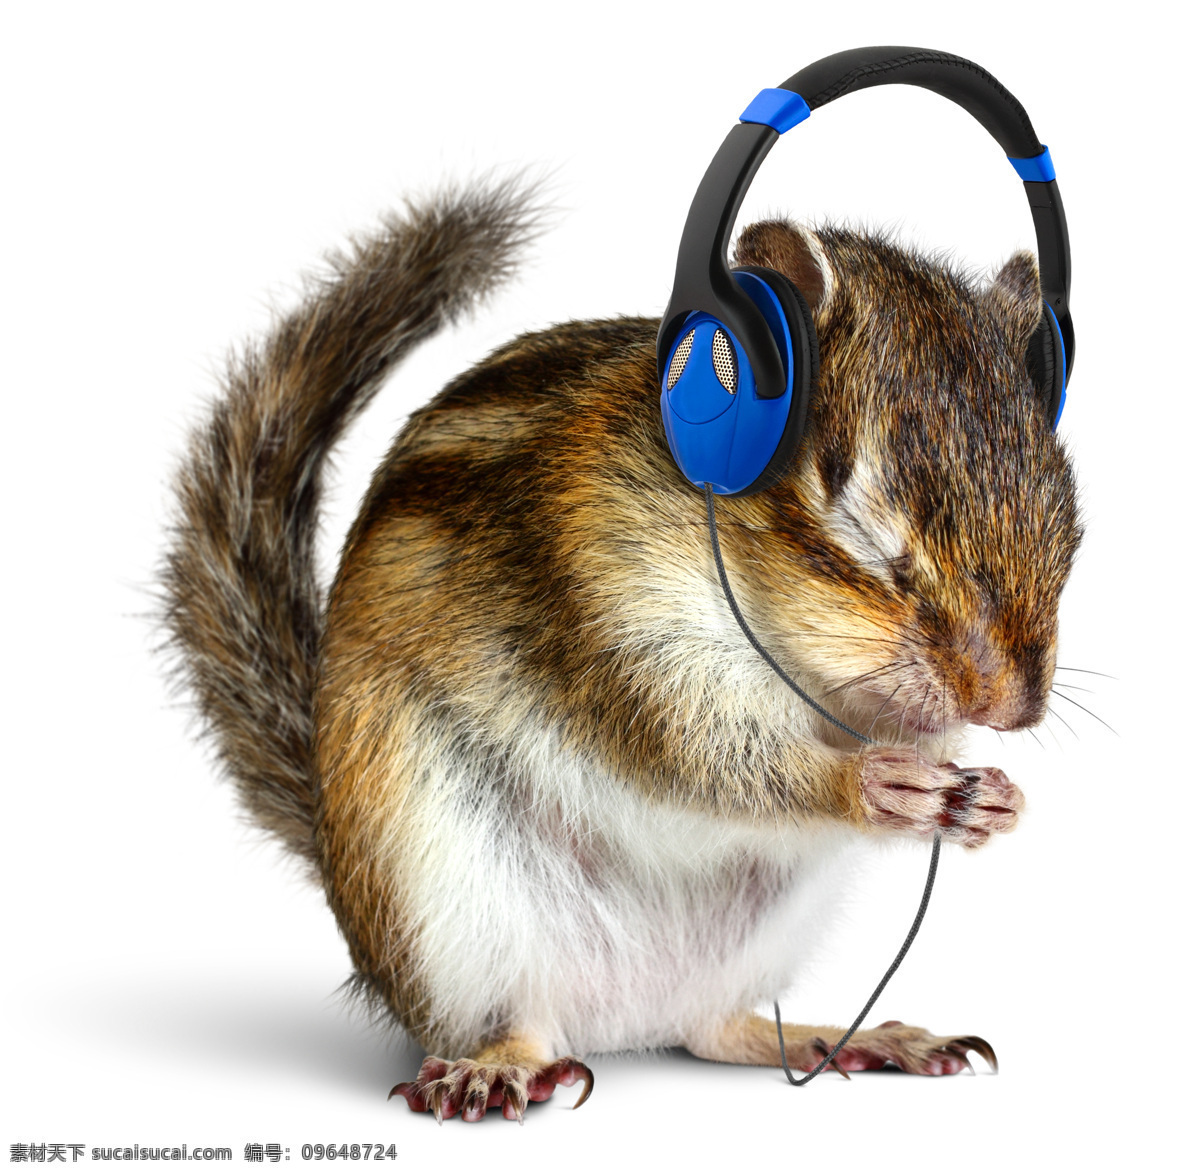 戴 耳机 兔子 戴耳机的兔子 听音乐的兔子 音乐器材 影音娱乐 生活百科